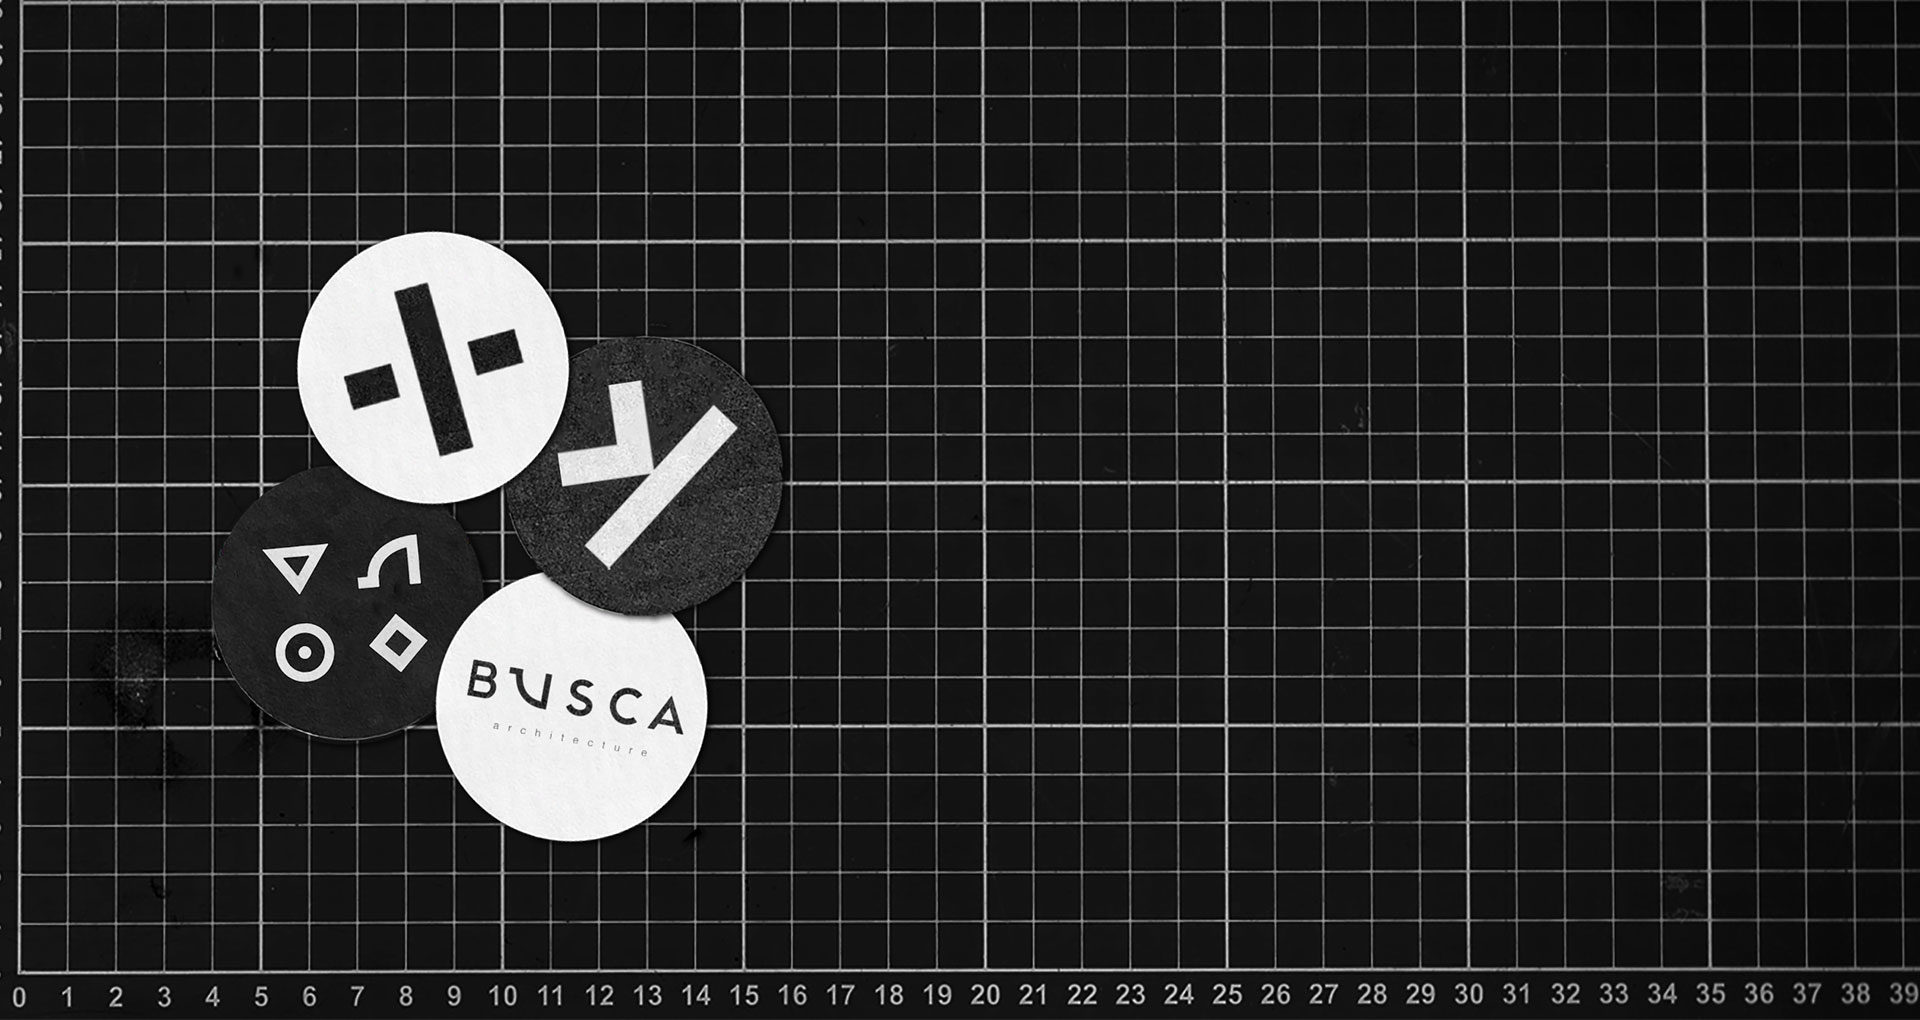 Identité visuelle, branding, direction artistique éditions Busca Idrac Architecture